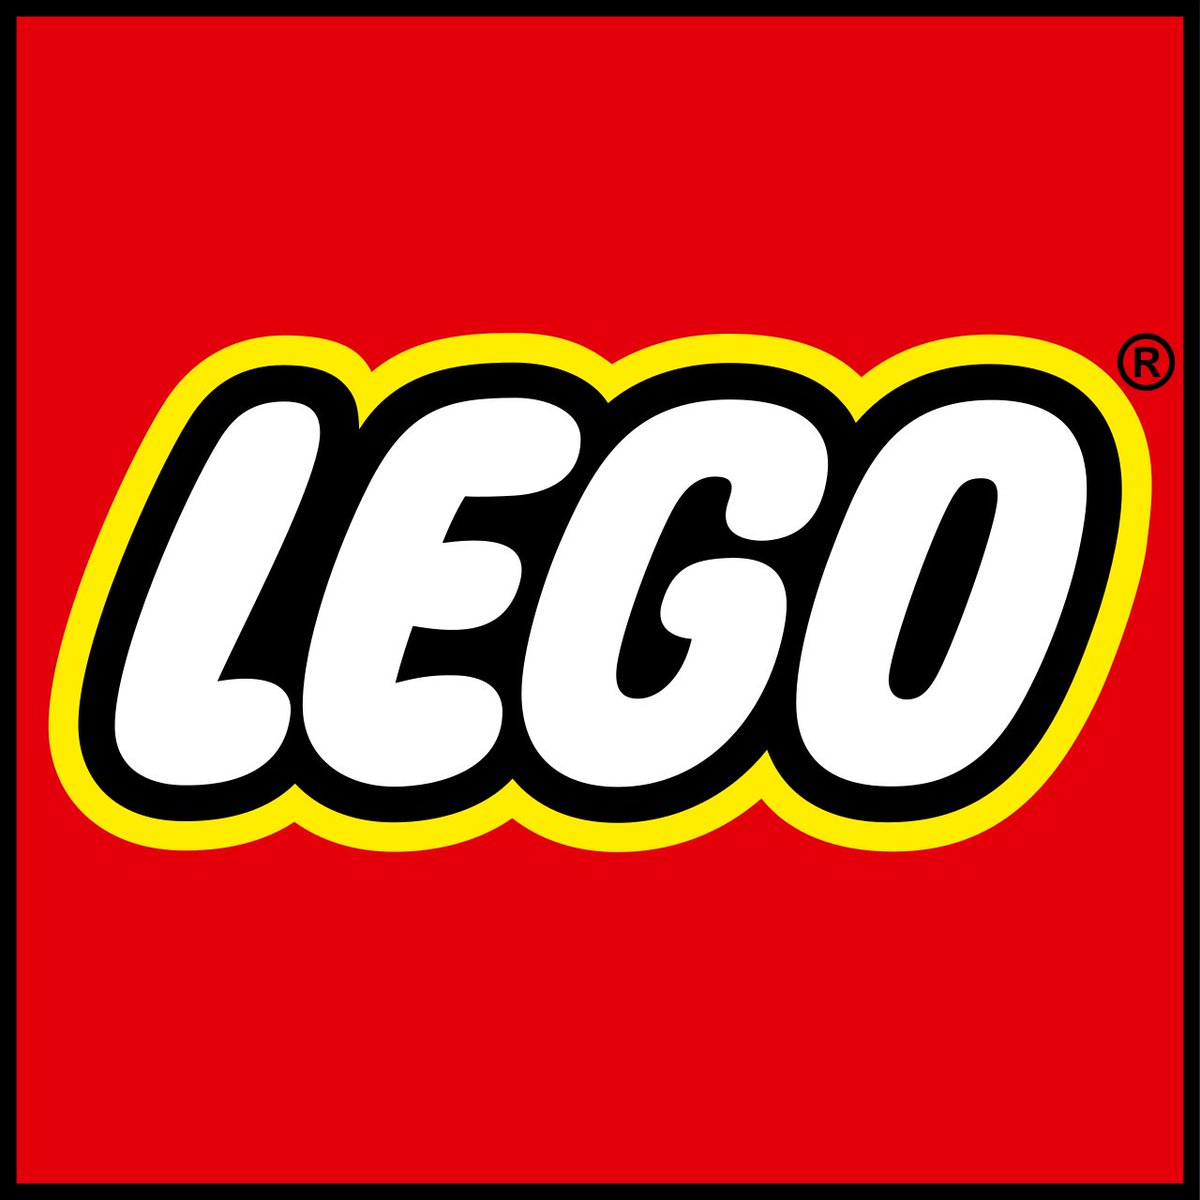 LEGO
Lego System
1932 yılında, Ole Kirk Christiansen tarafından Billund, DANİMARKA'da kuruldu.